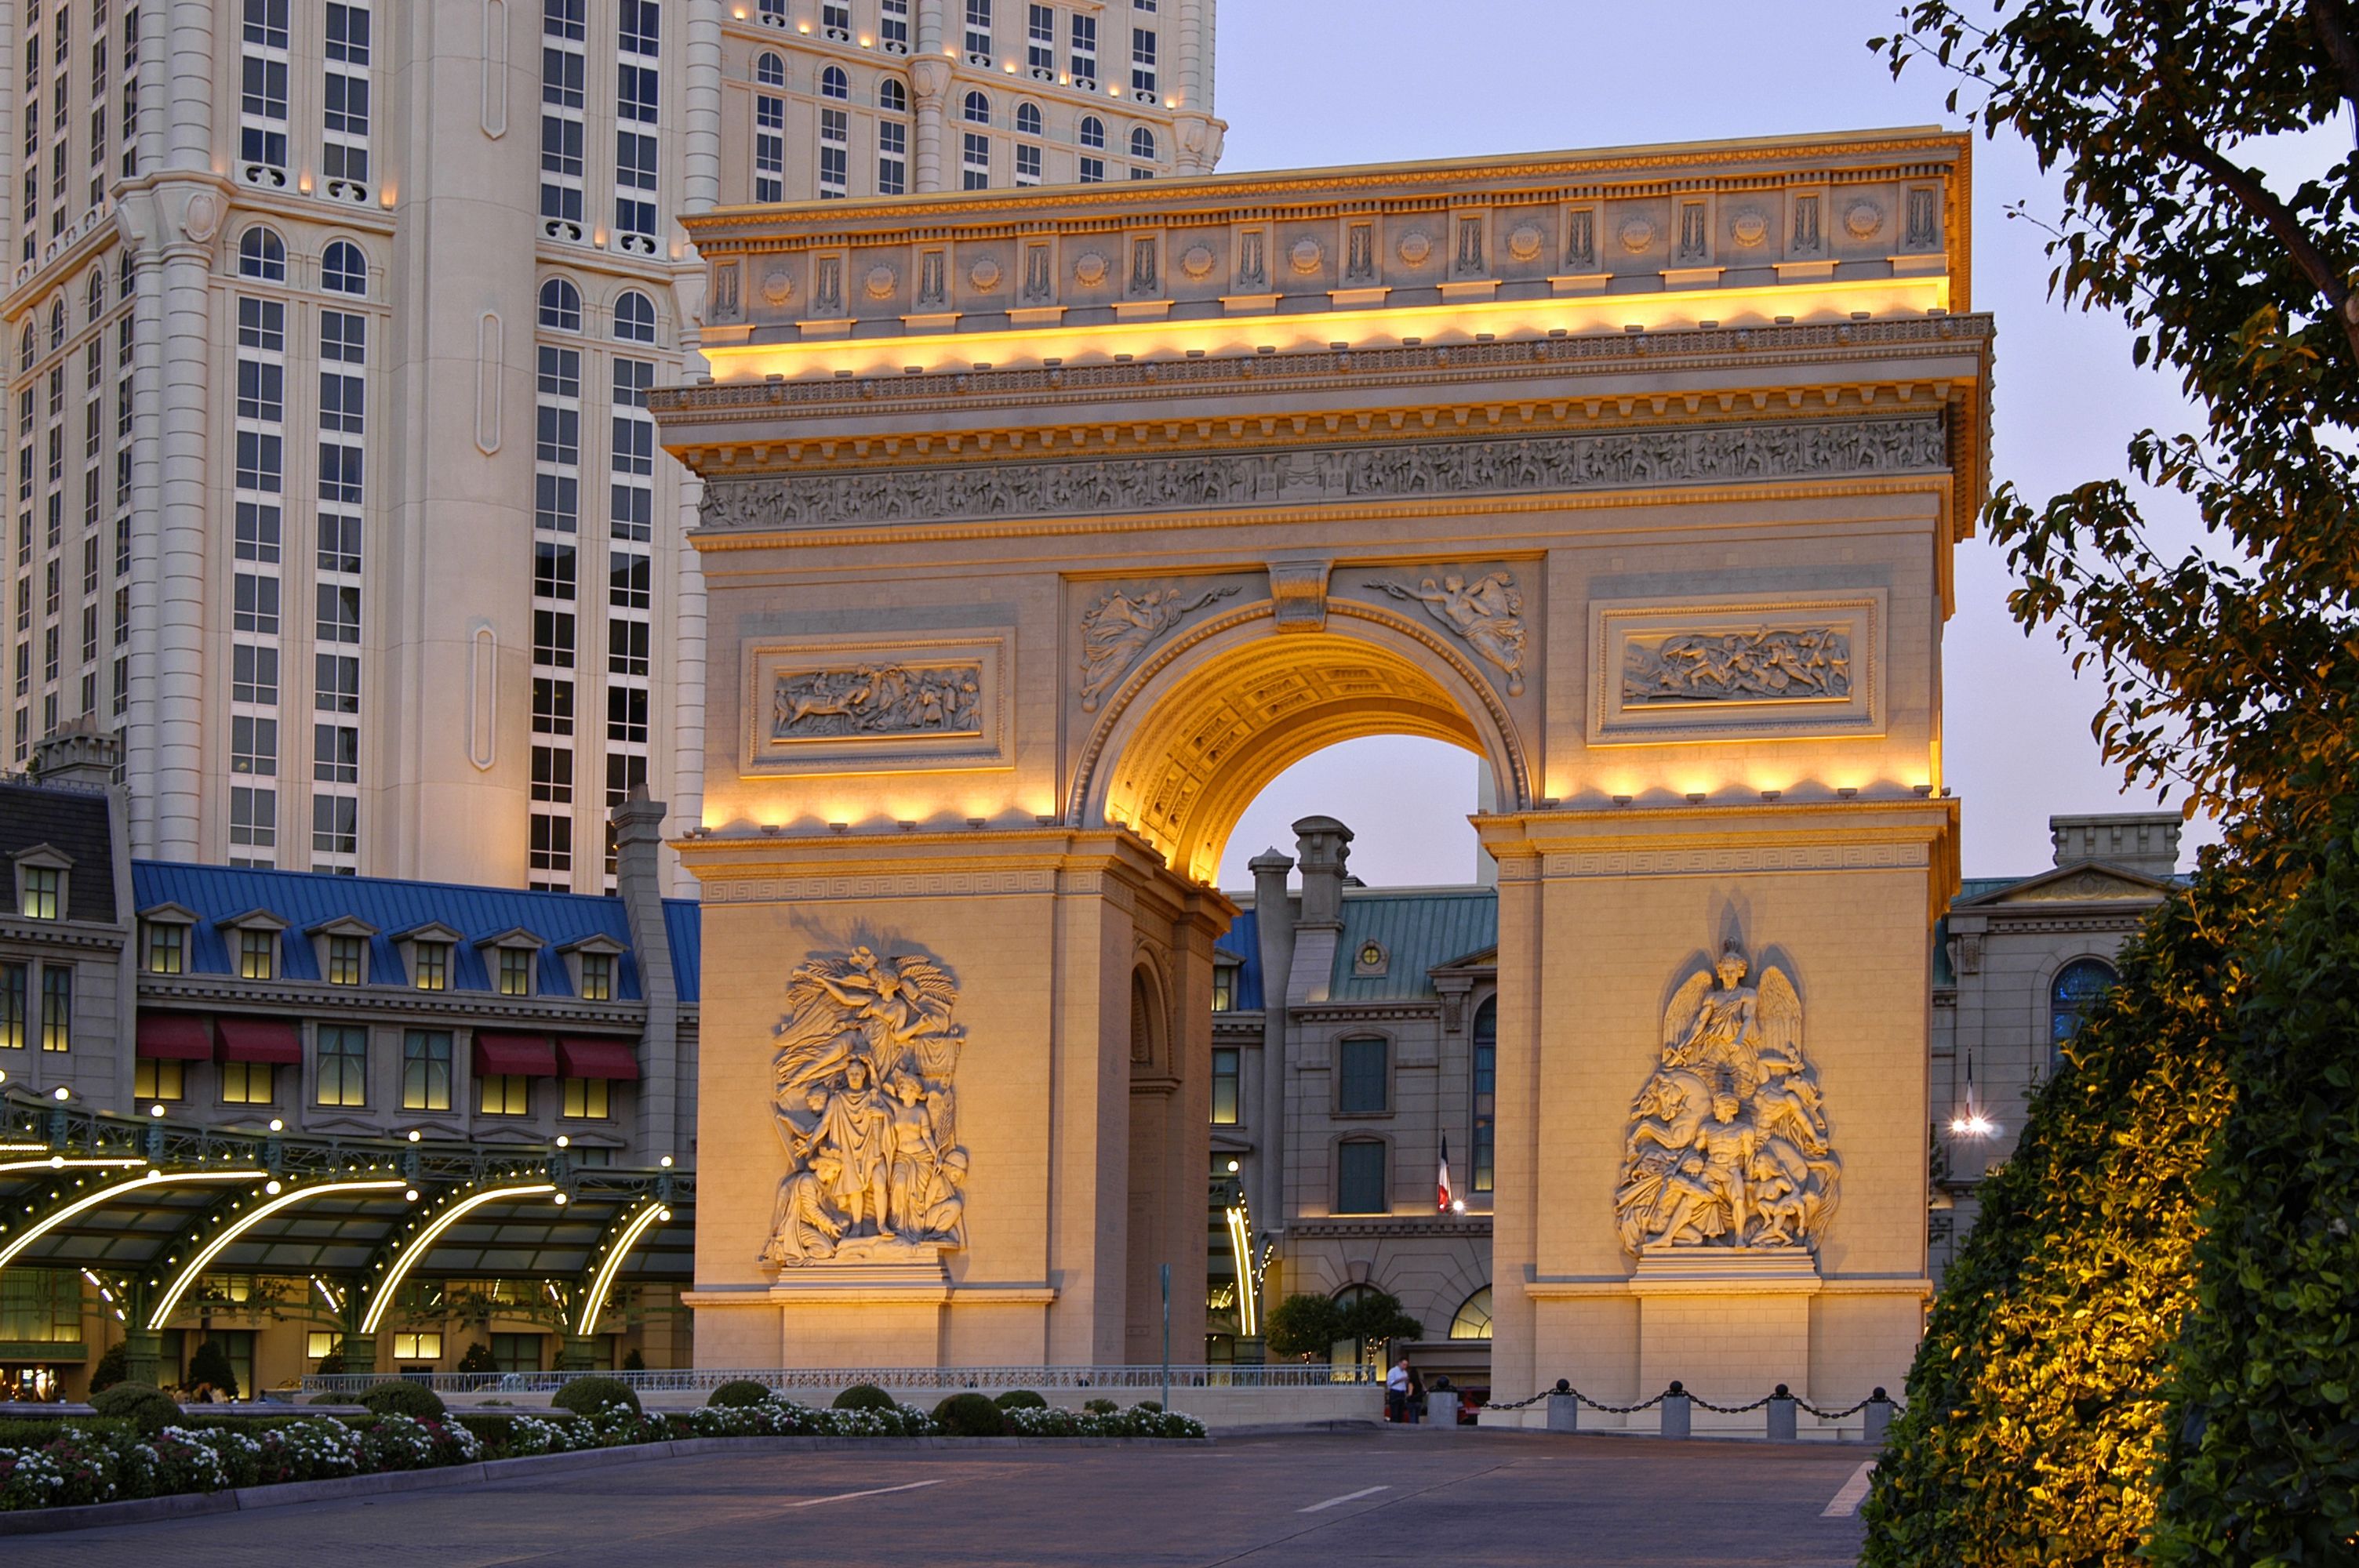 Paris Las Vegas Hotel & Casino